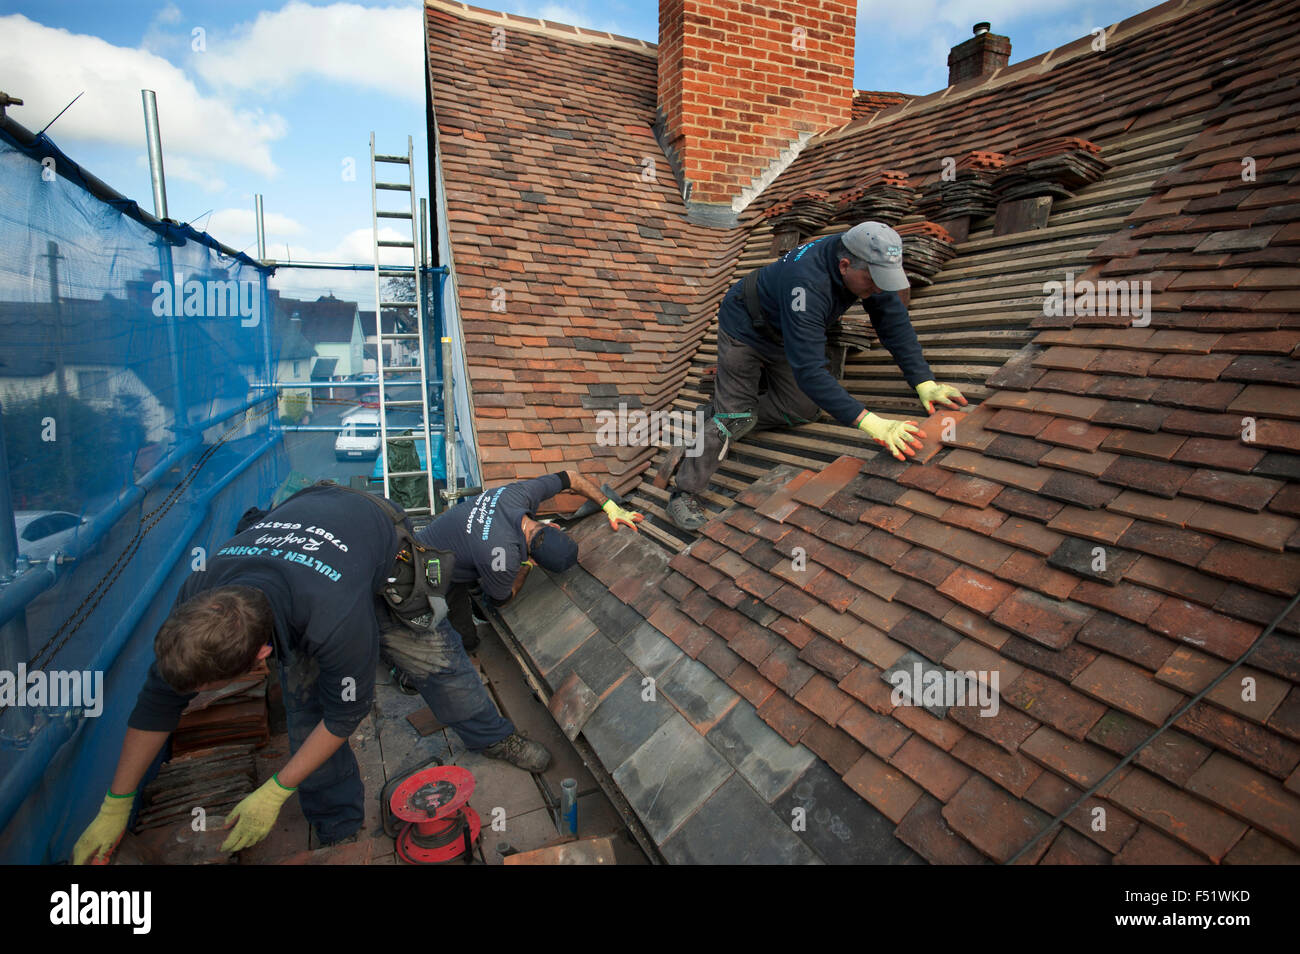 Remplacement et réparation de toit Thaxted sur les photographes maison datant du 15e siècle. Thaxted, Essex, Angleterre, Royaume-Uni. 102015 Banque D'Images